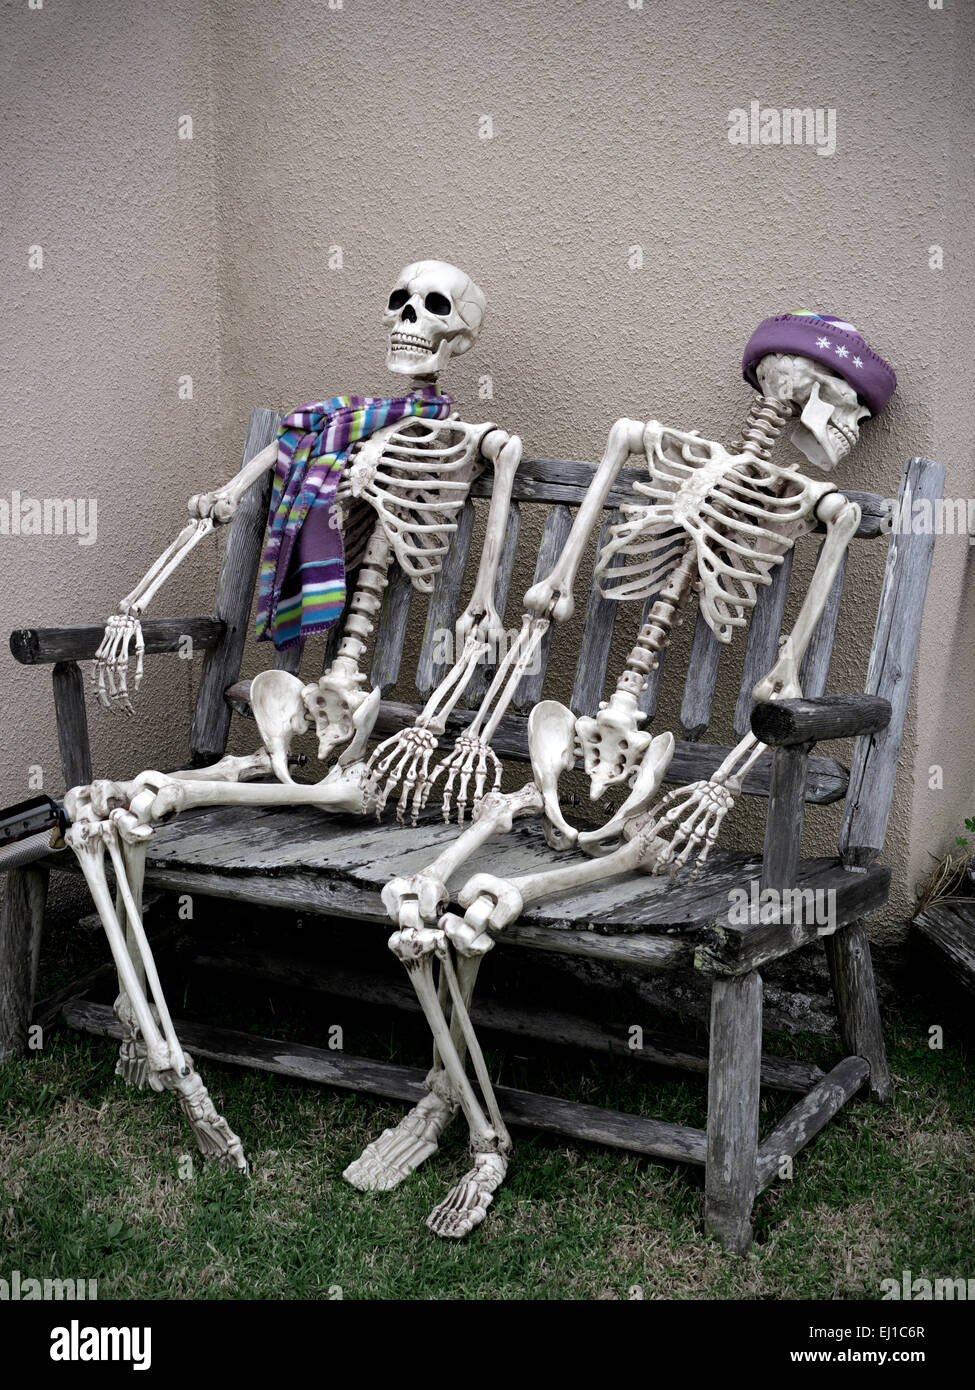 SKELETONS SITTING PANCHINA ALL'APERTO LISTA D'ATTESA NHS immagine concettuale dell'umorismo scuro di due scheletri seduti ad aspettare una vita insieme su una panchina da giardino Foto Stock